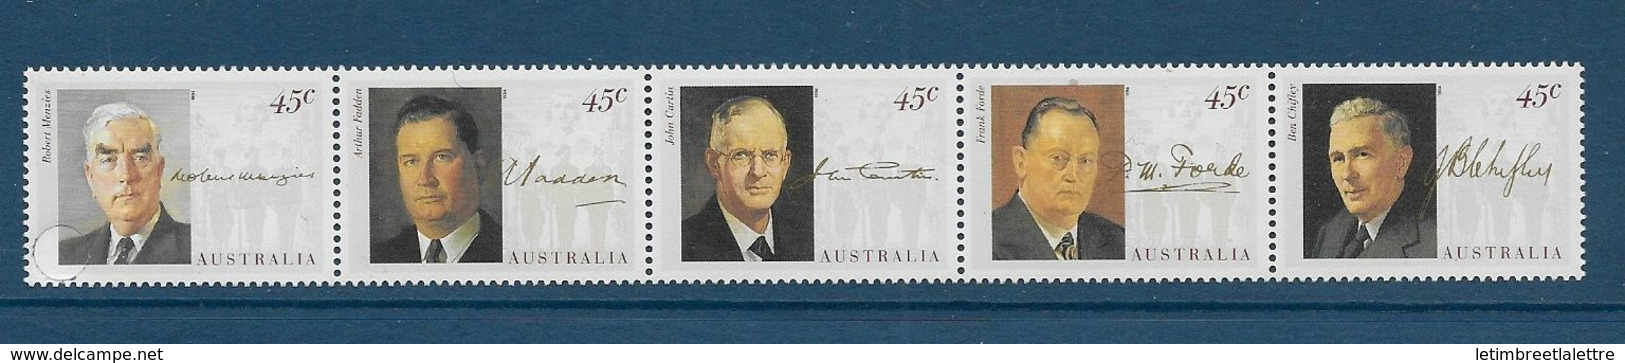 Australie N1379 à 1383**                                                                                 ** - Mint Stamps